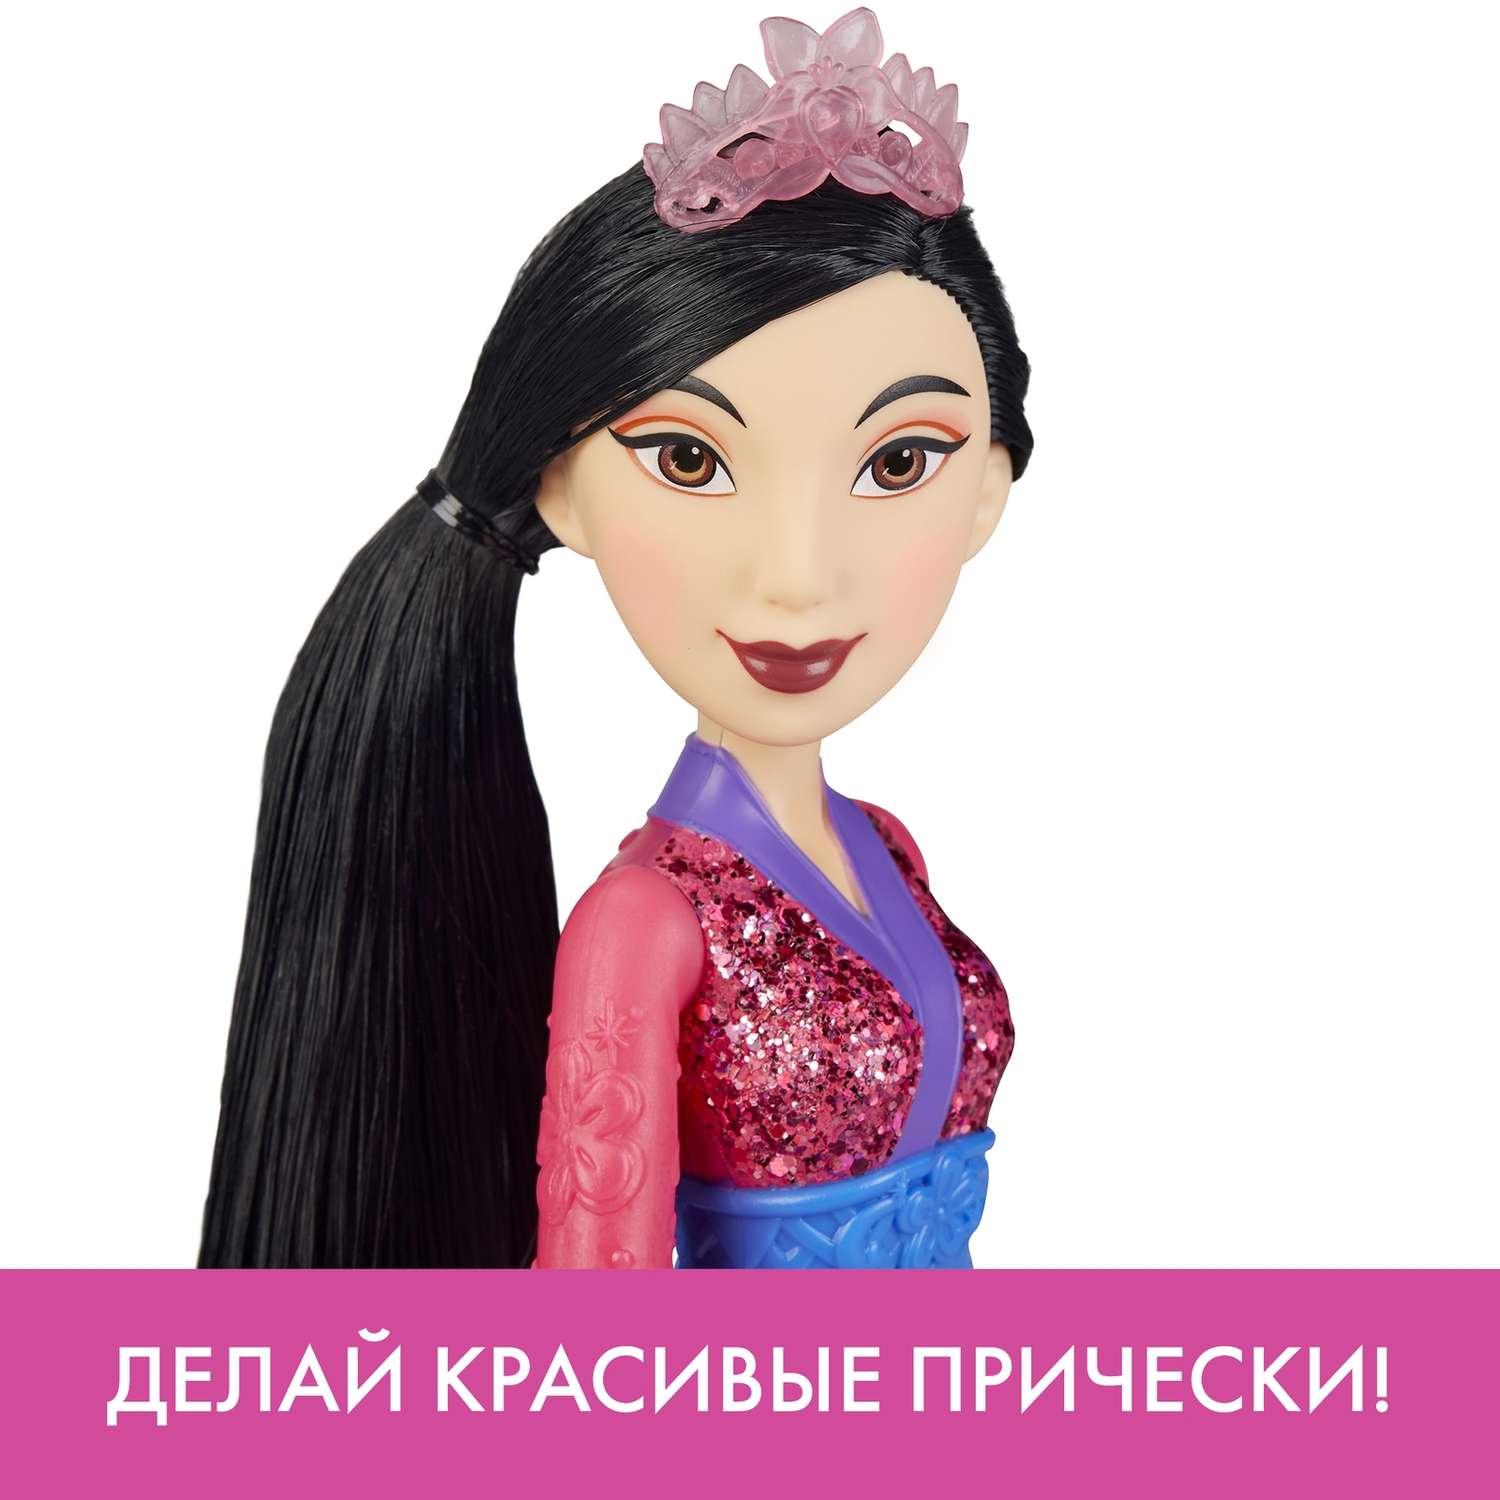 Кукла Disney Princess Hasbro C Мулан E4167EU4 E4022EU4 - фото 12